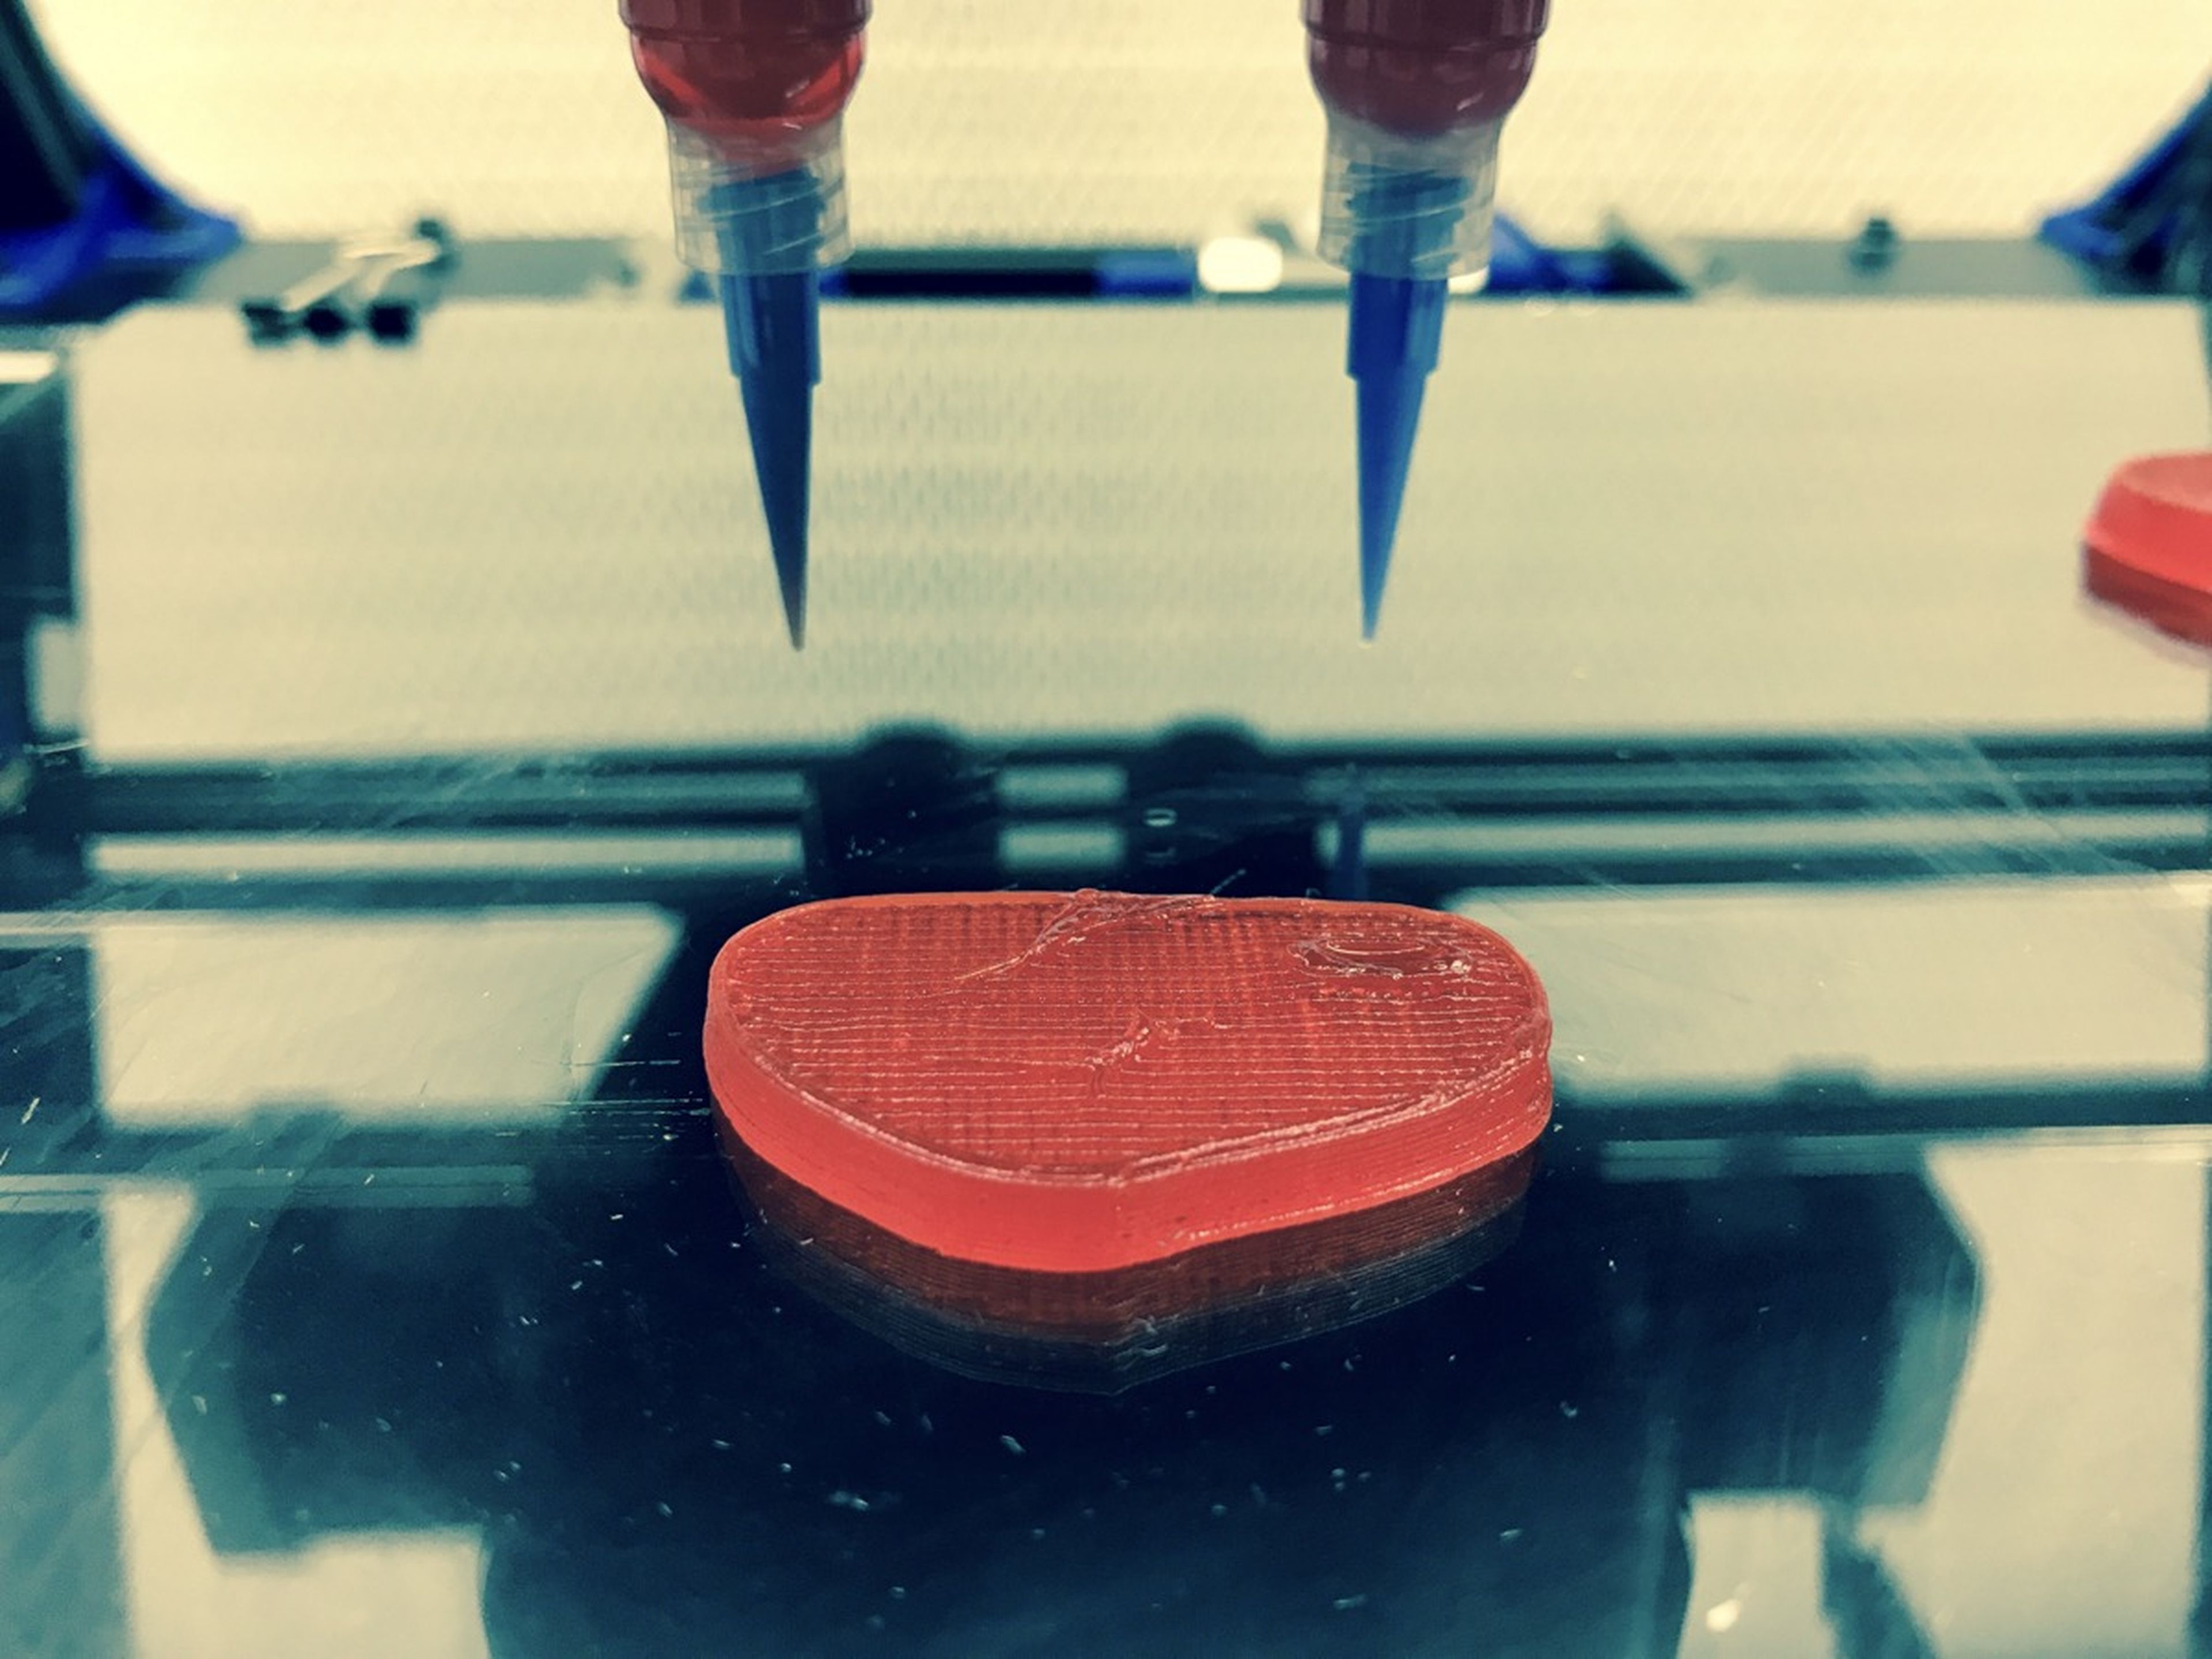 Se introduce una pasta rojiza en la impresora 3D y a través de una boquilla reproduce la estructura de la carne.